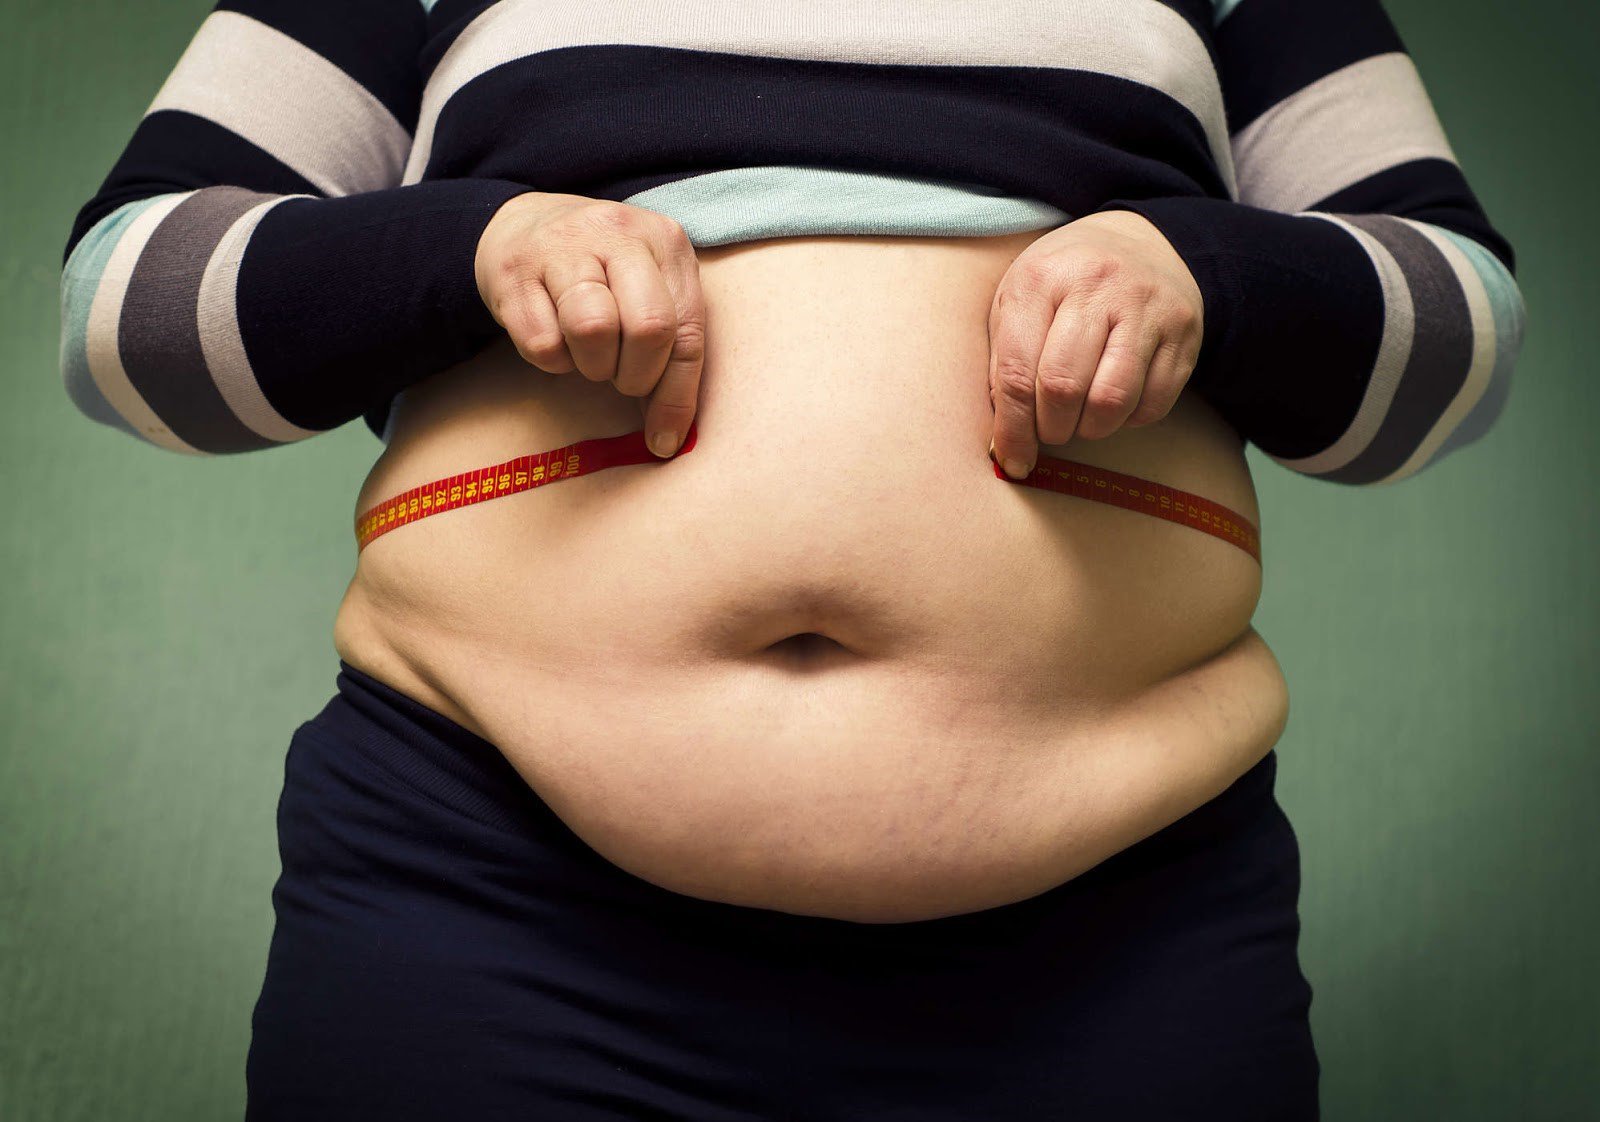 Liệt kê 7 lý do làm quá trình giảm cân của bạn bị chững lại